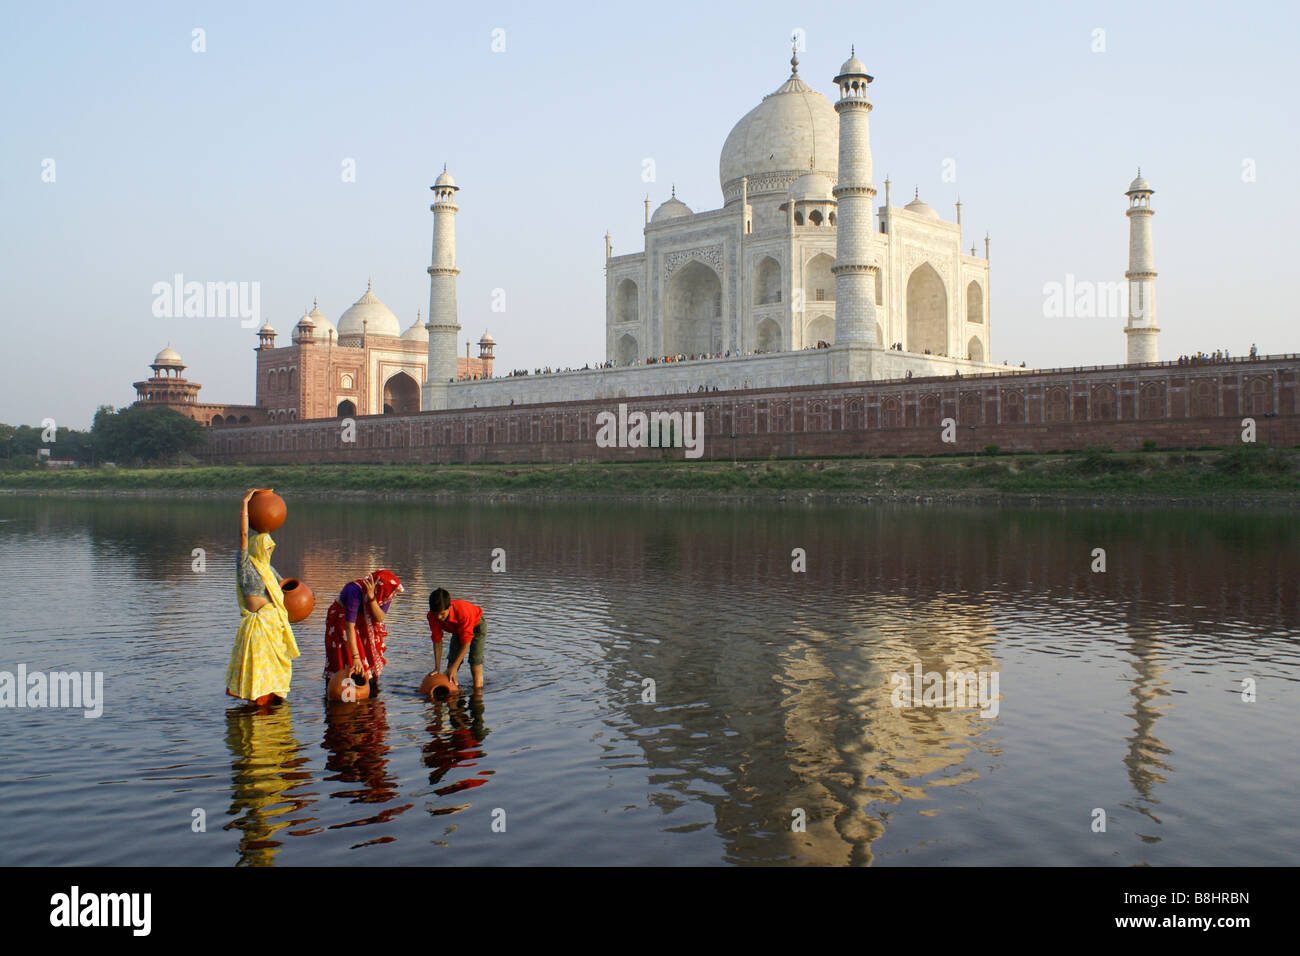 Les femmes et l'eau de boy getting rivière Yamuna avec Taj Mahal en arrière-plan, Agra, Inde Banque D'Images